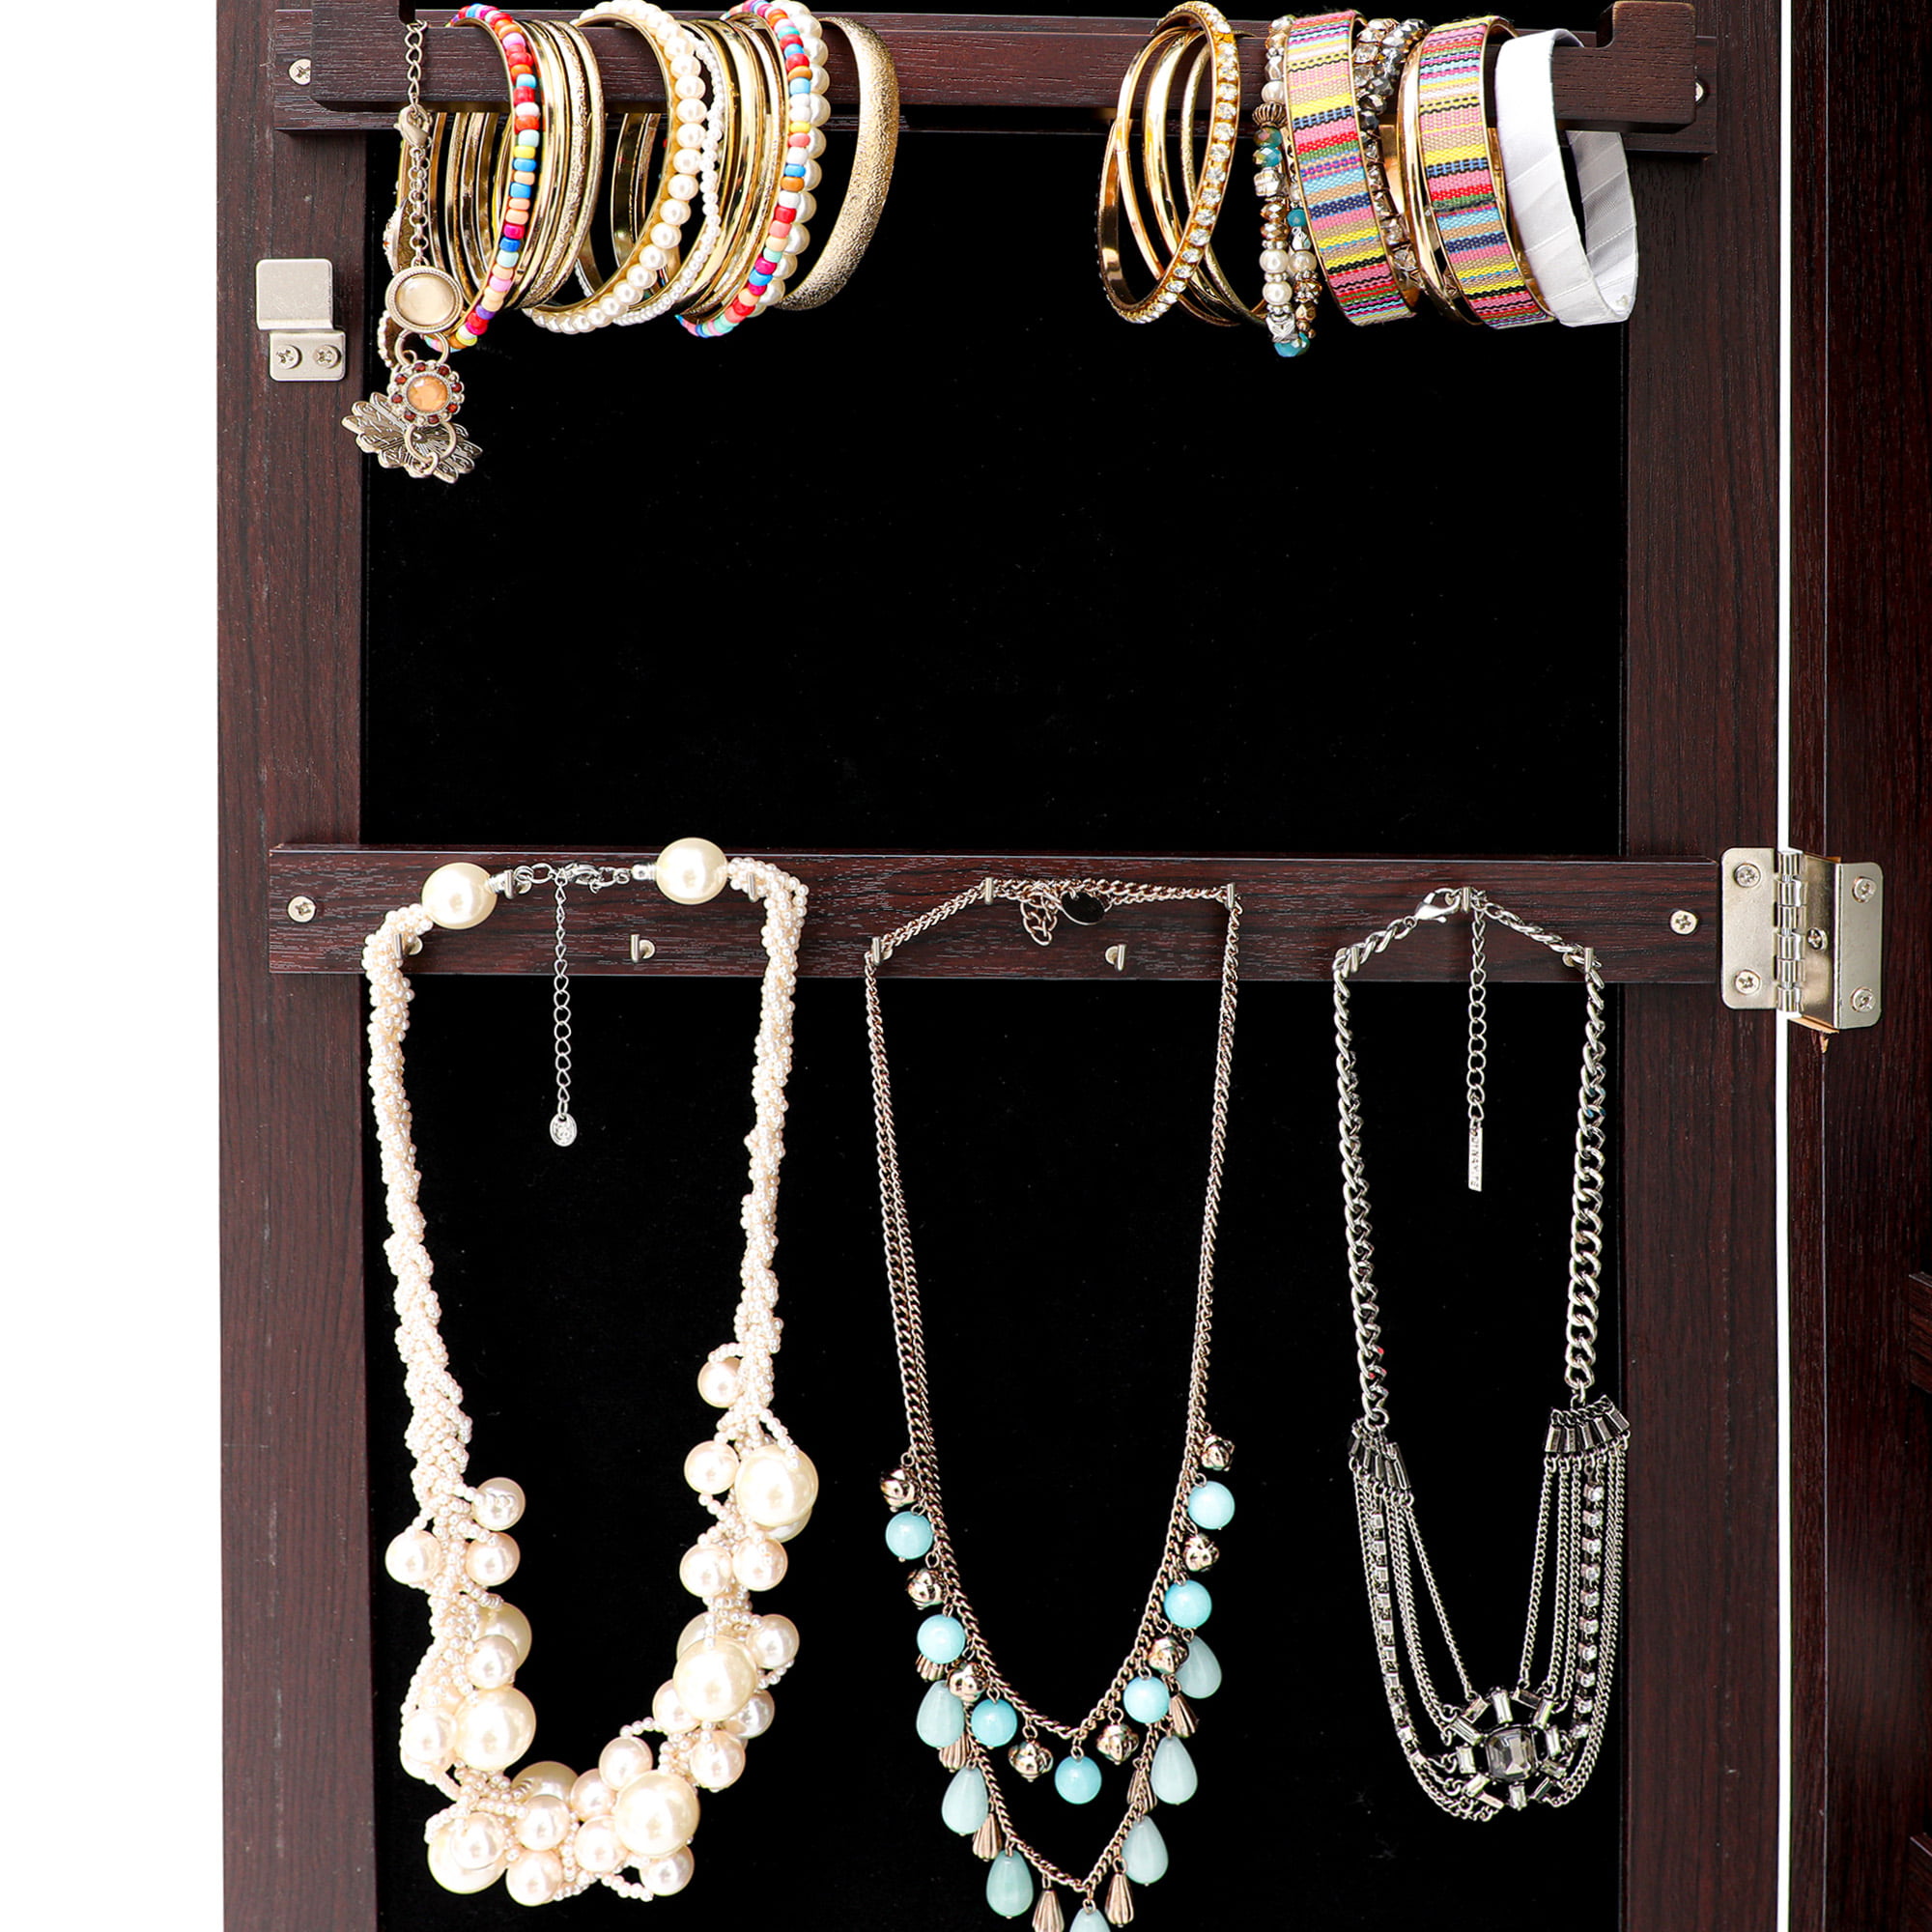 Jewelry Storage Organizer, Hanging Jewelry Armoire Organizer w/Mirror&LED Lights, Lockable Cosmetic Storage&Organizer w/Brush Holder, Wall-Mounted